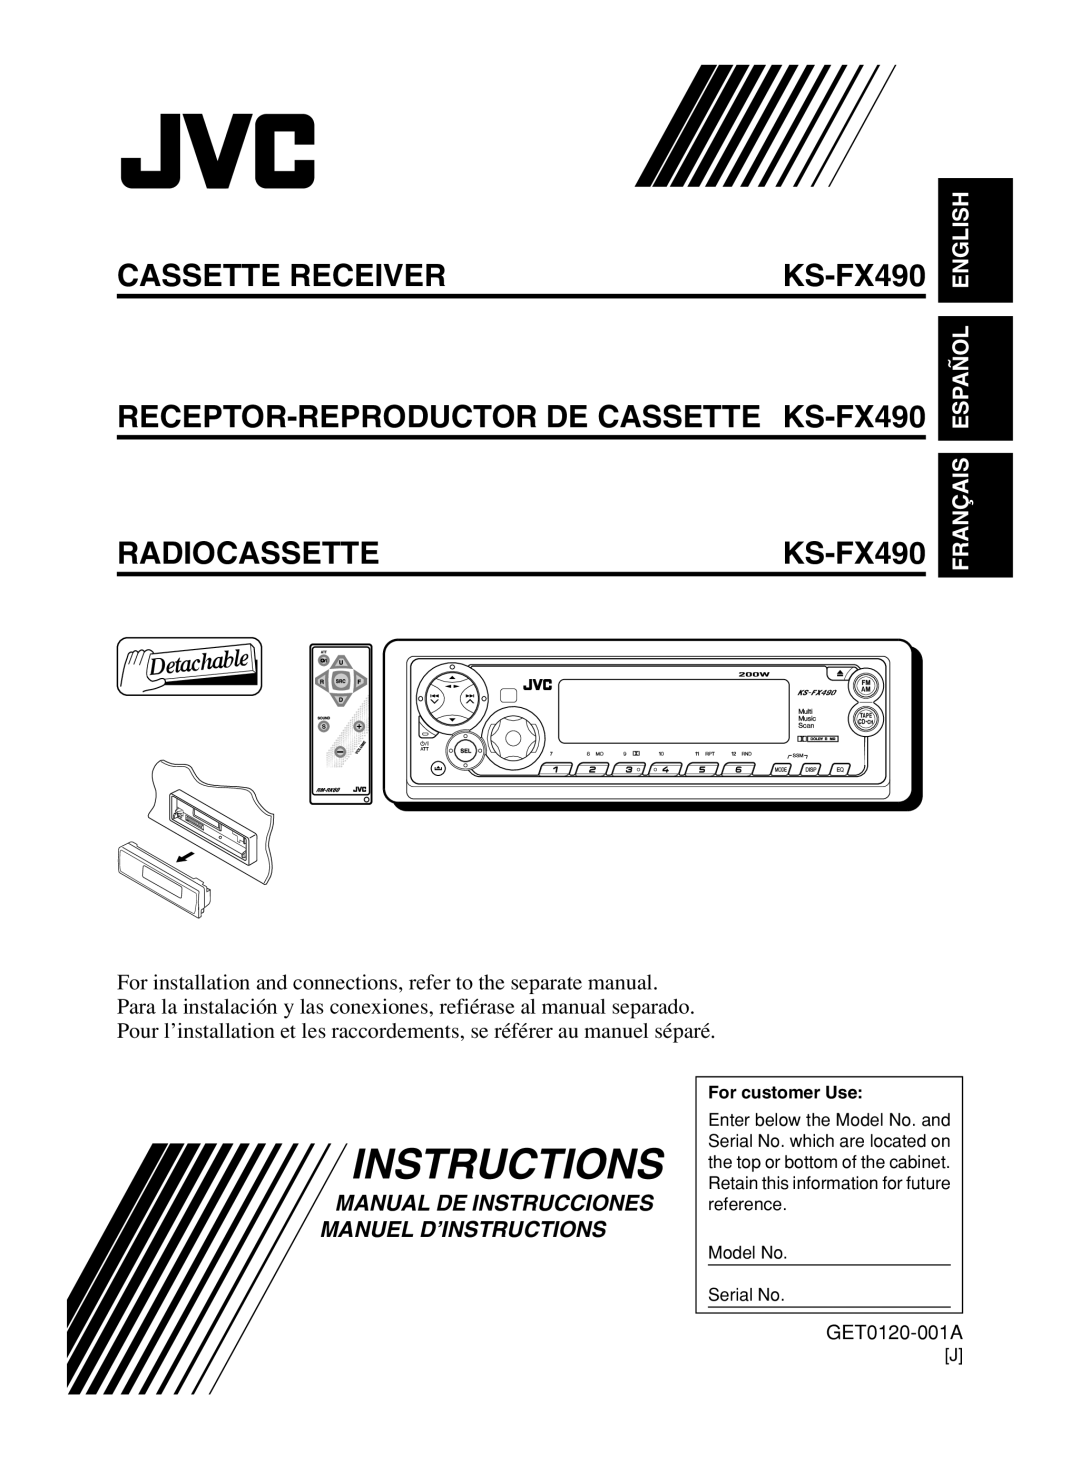 JVC manual Cassette Receiver, RECEPTOR-REPRODUCTOR DE CASSETTE KS-FX490, Radiocassette, Français Español English 